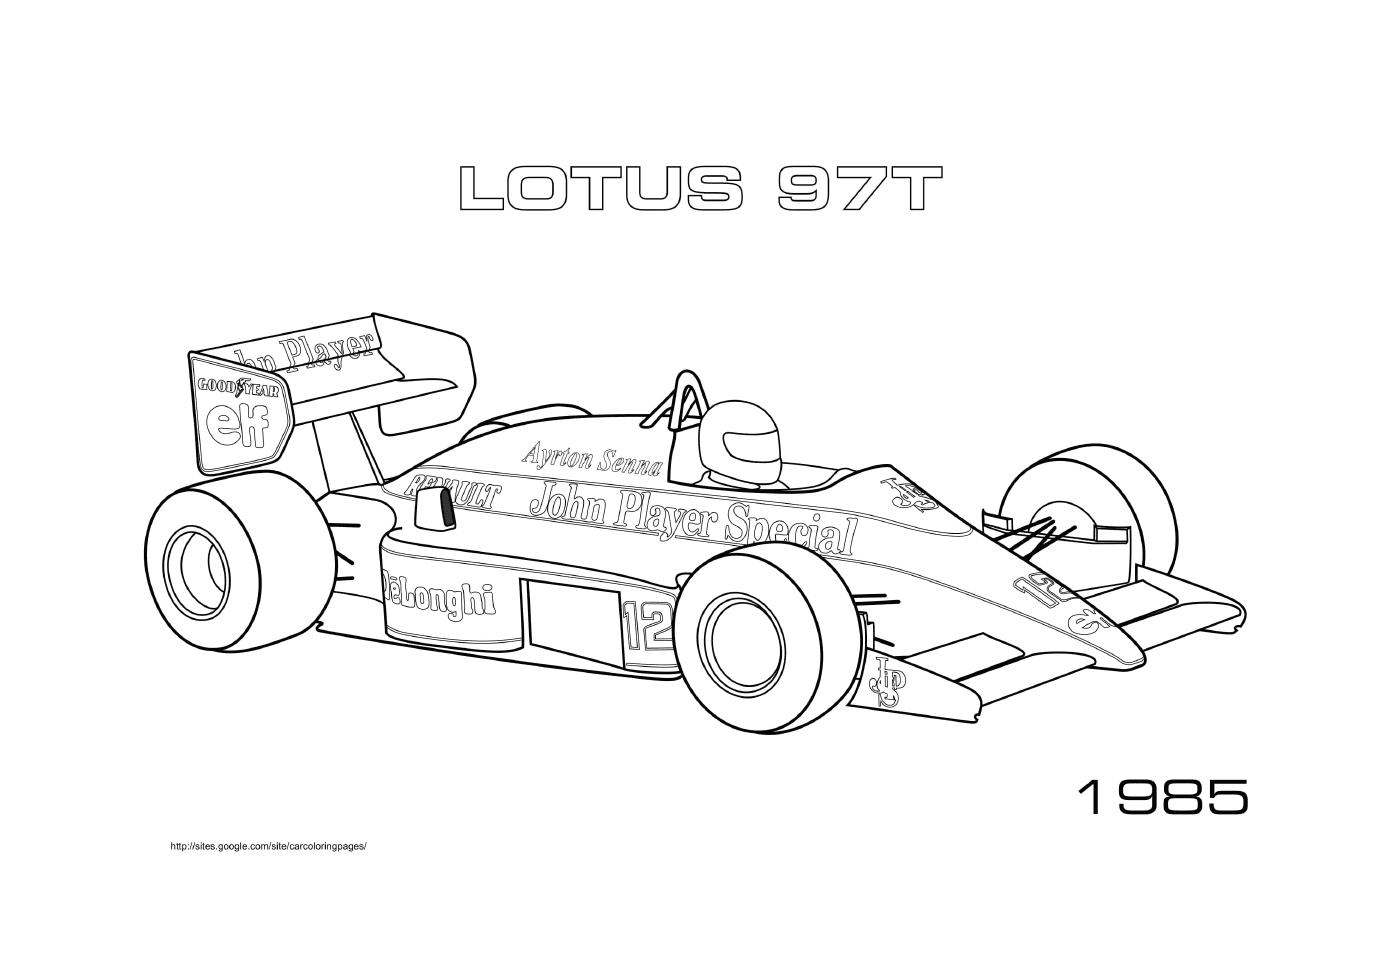  الدورة الأولى للرياضـة F1 plus 97t 1985 